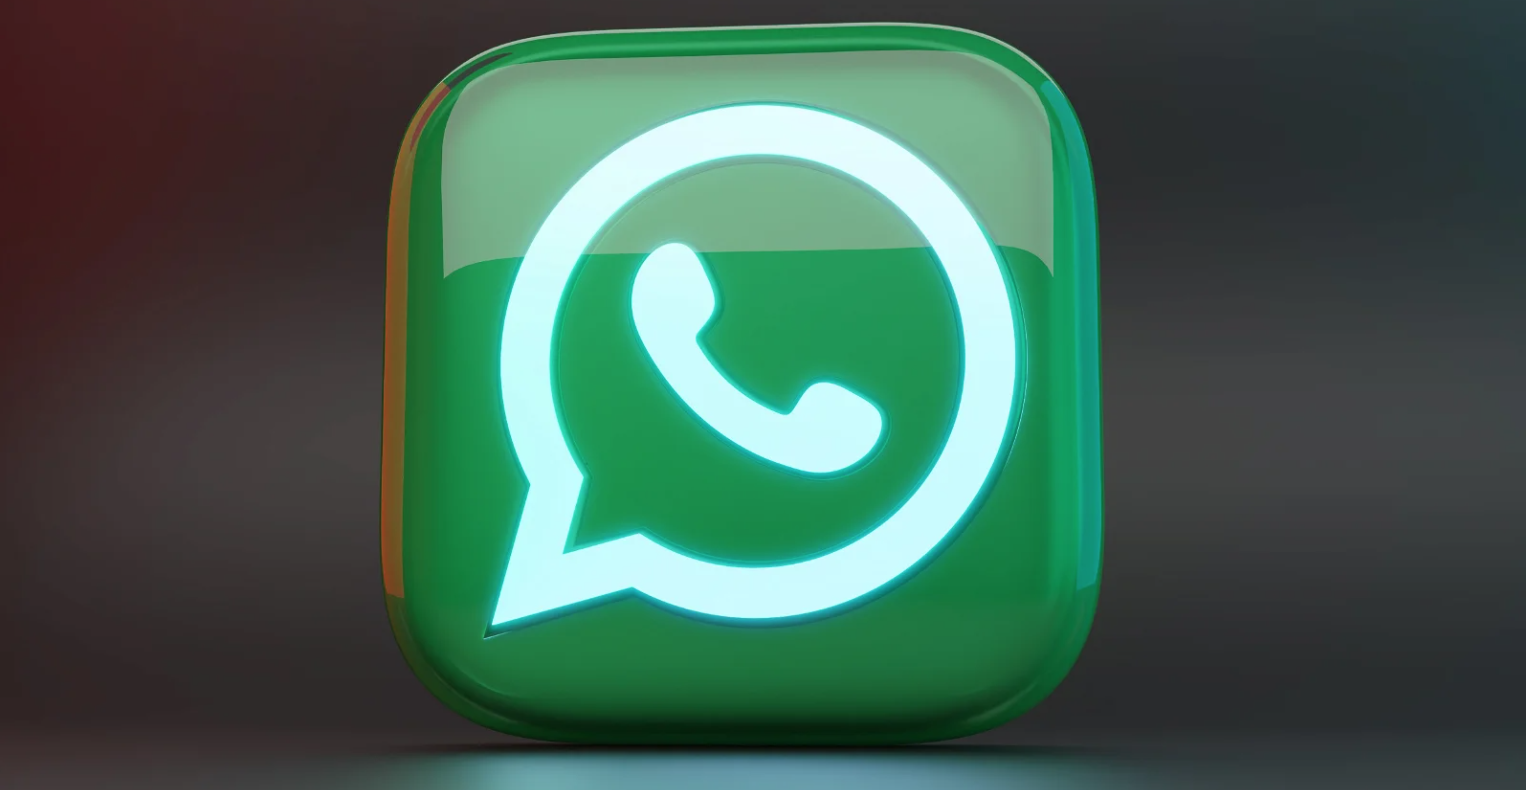 Dispositivos Donde No Vas A Poder Usar Whatsapp Desde El 30 De Octubre 6543